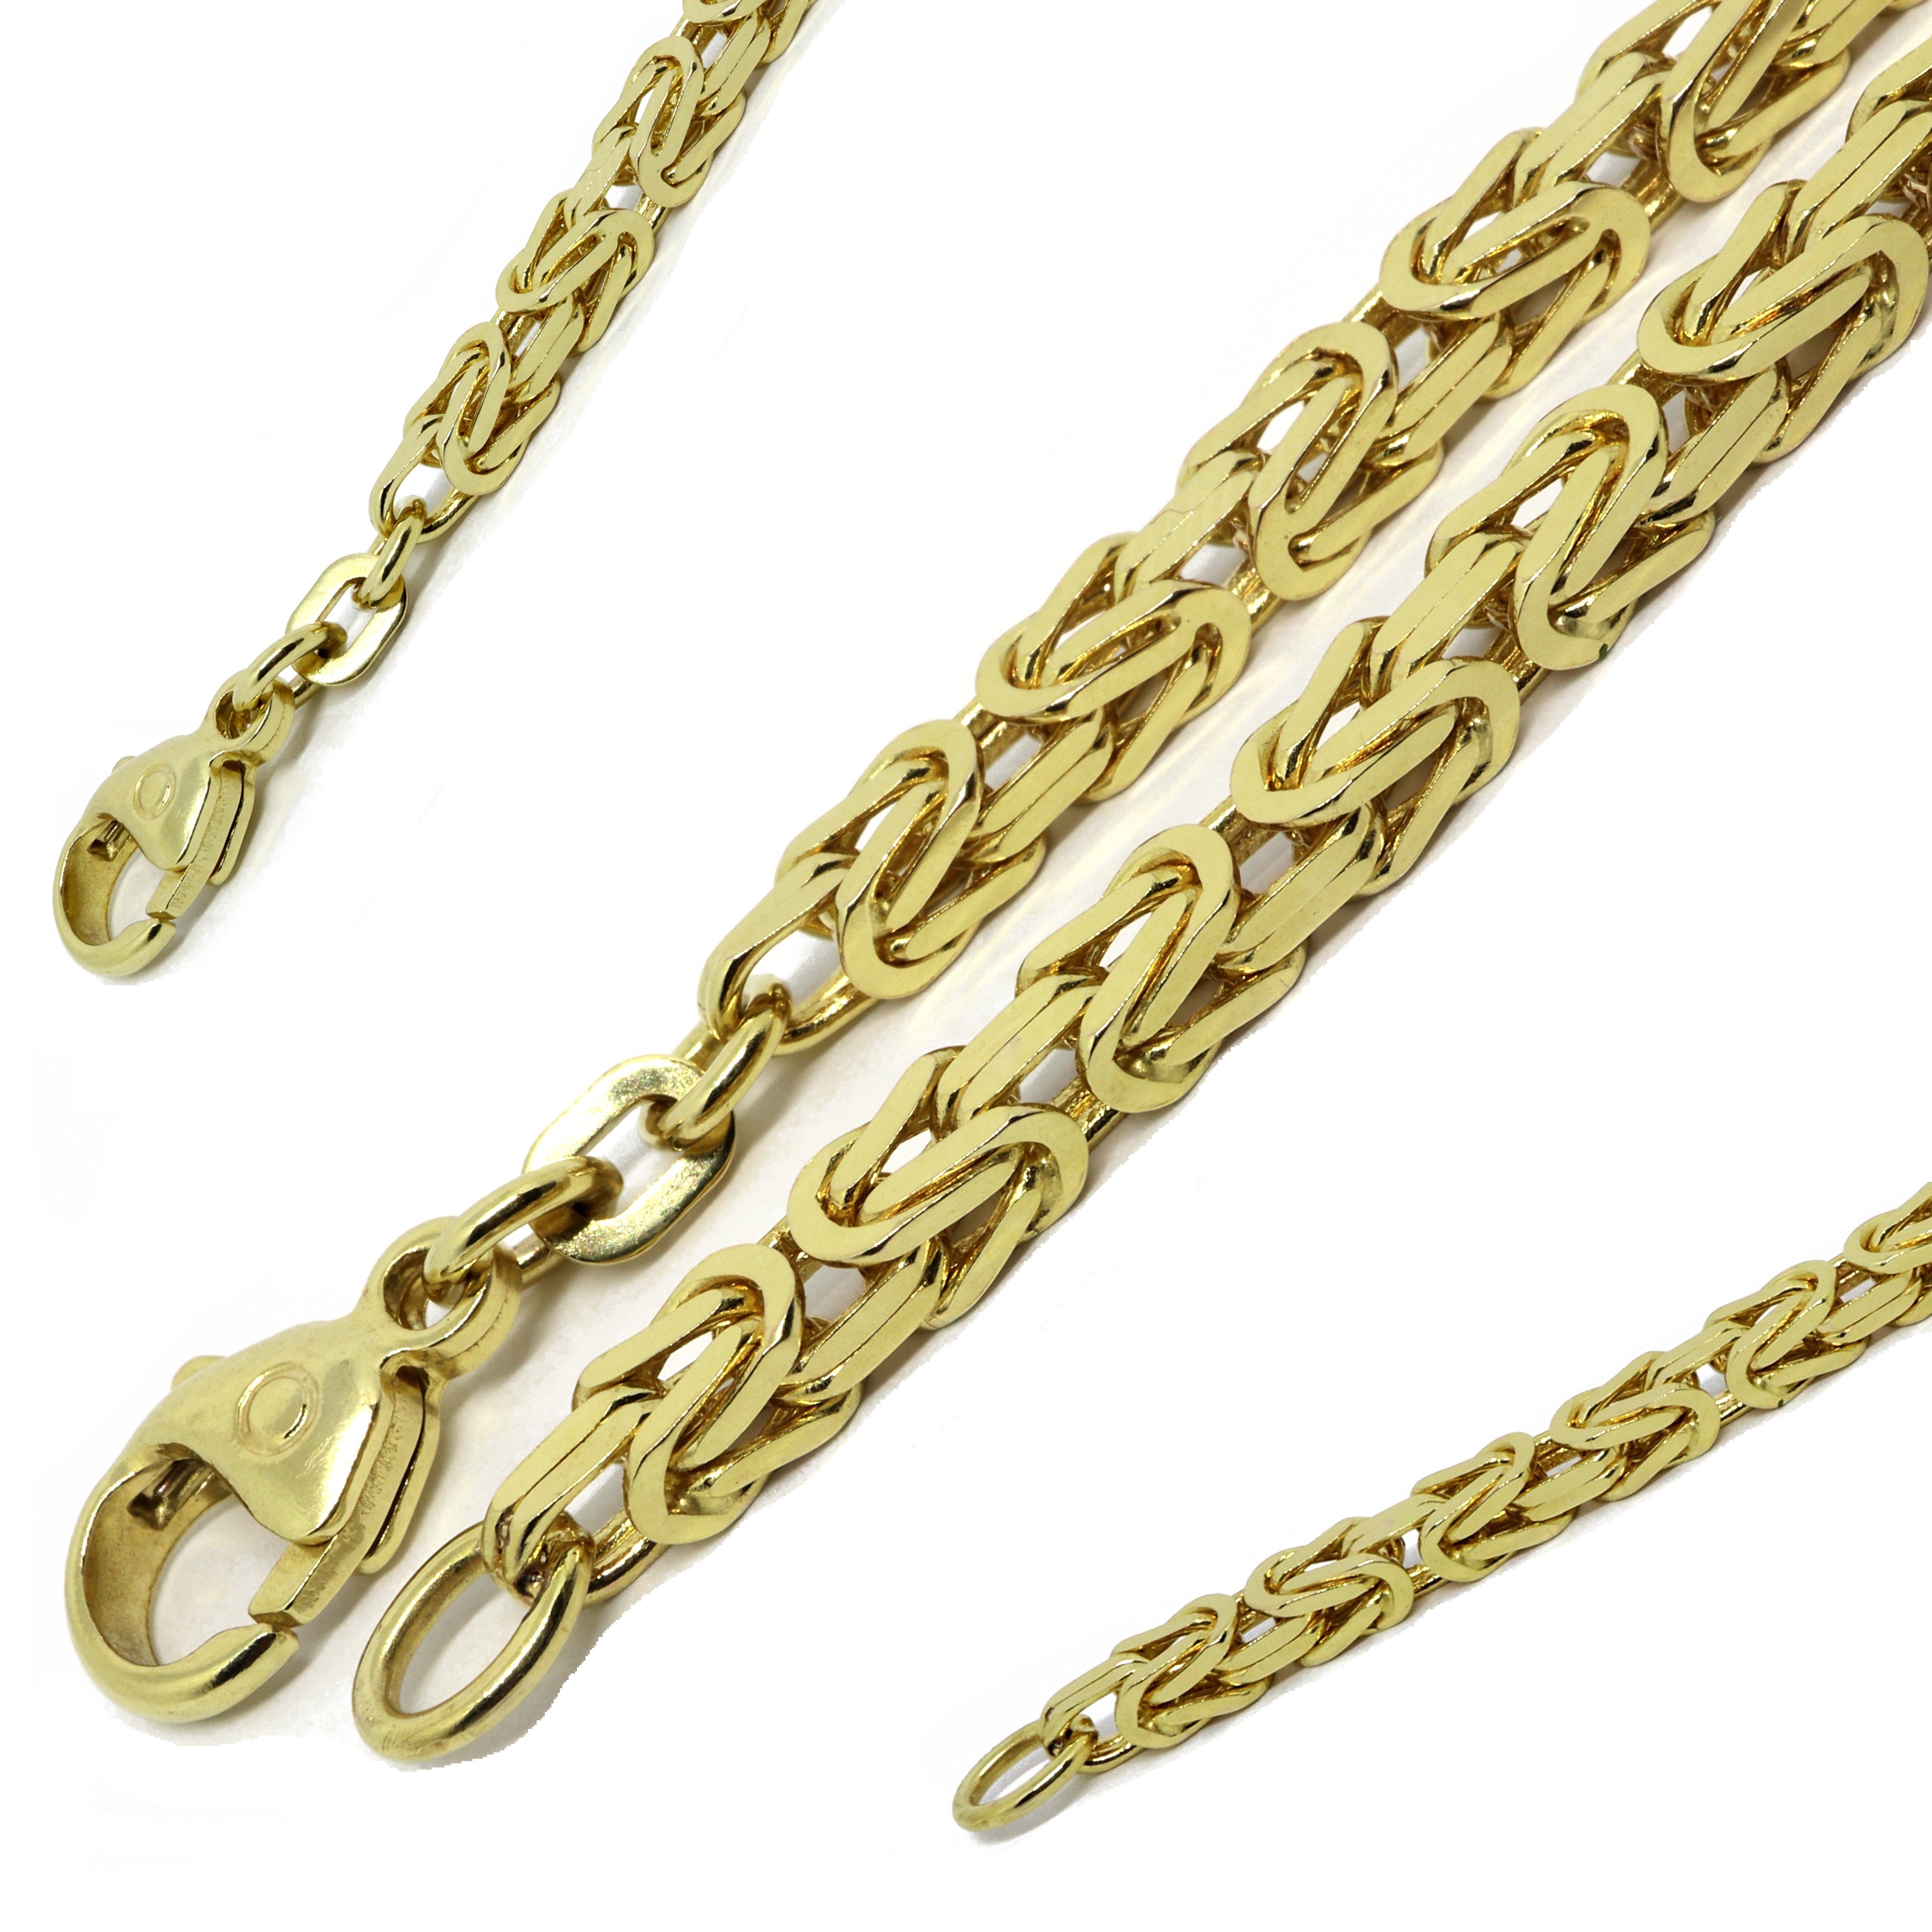 G & J Collier Königskette 585/14K Gold 3,2mm 50 - 65cm hochwertige Halskette, Made in Germany | Ketten ohne Anhänger